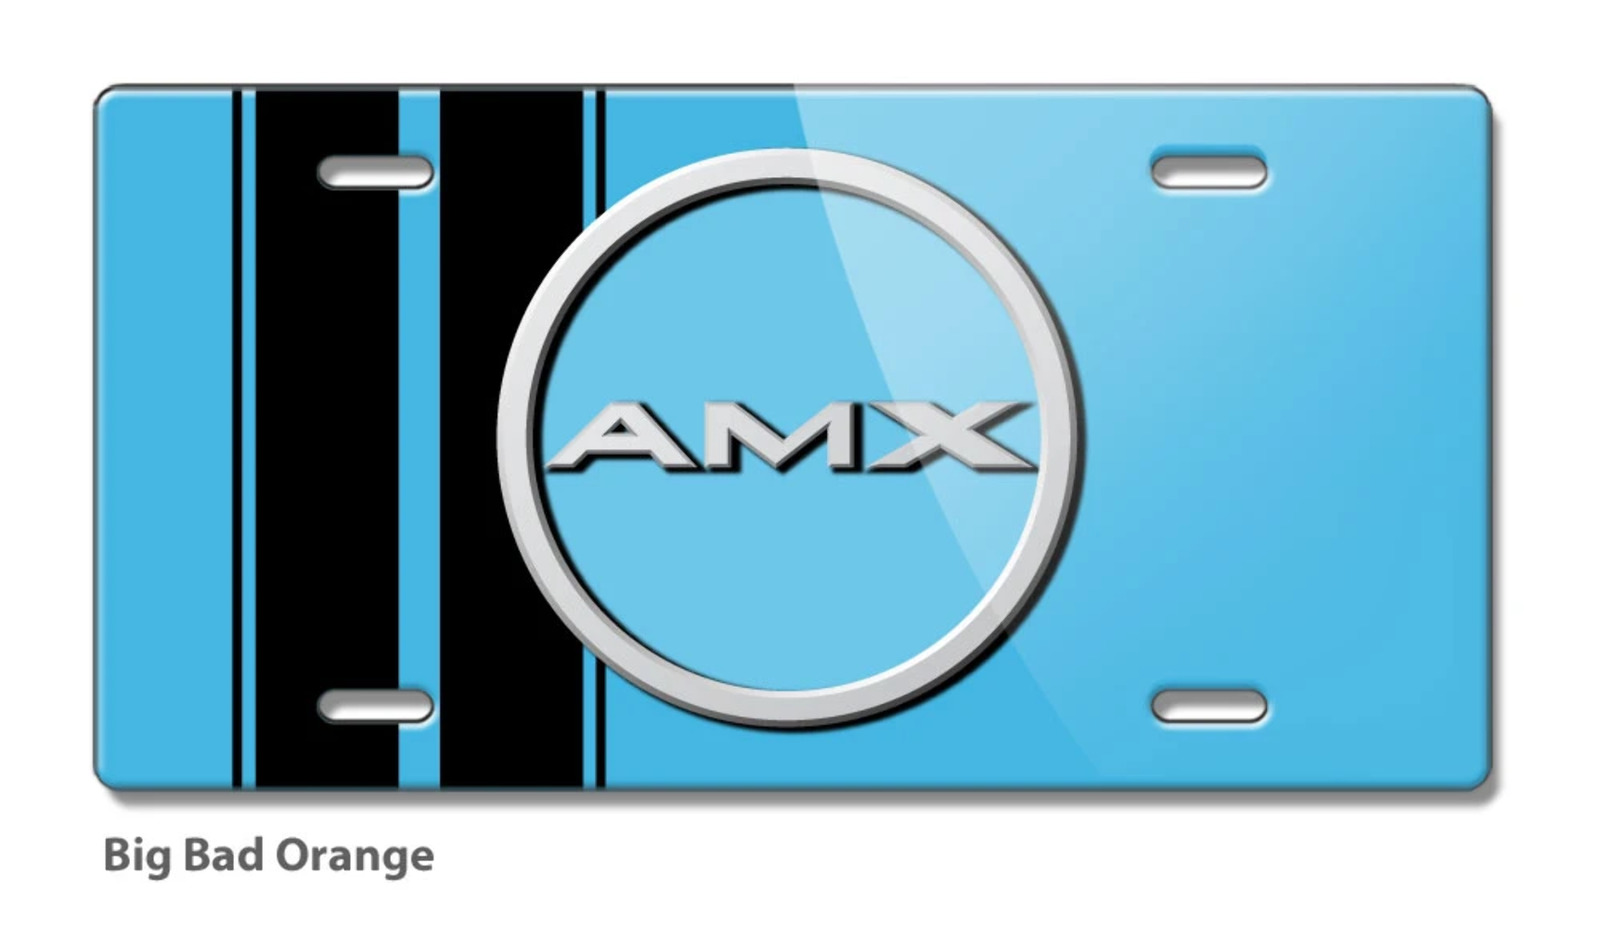 1968 - 1970 AMC AMX Big Bad Emblem Novelty License Plate - Aluminum - 3 colors -